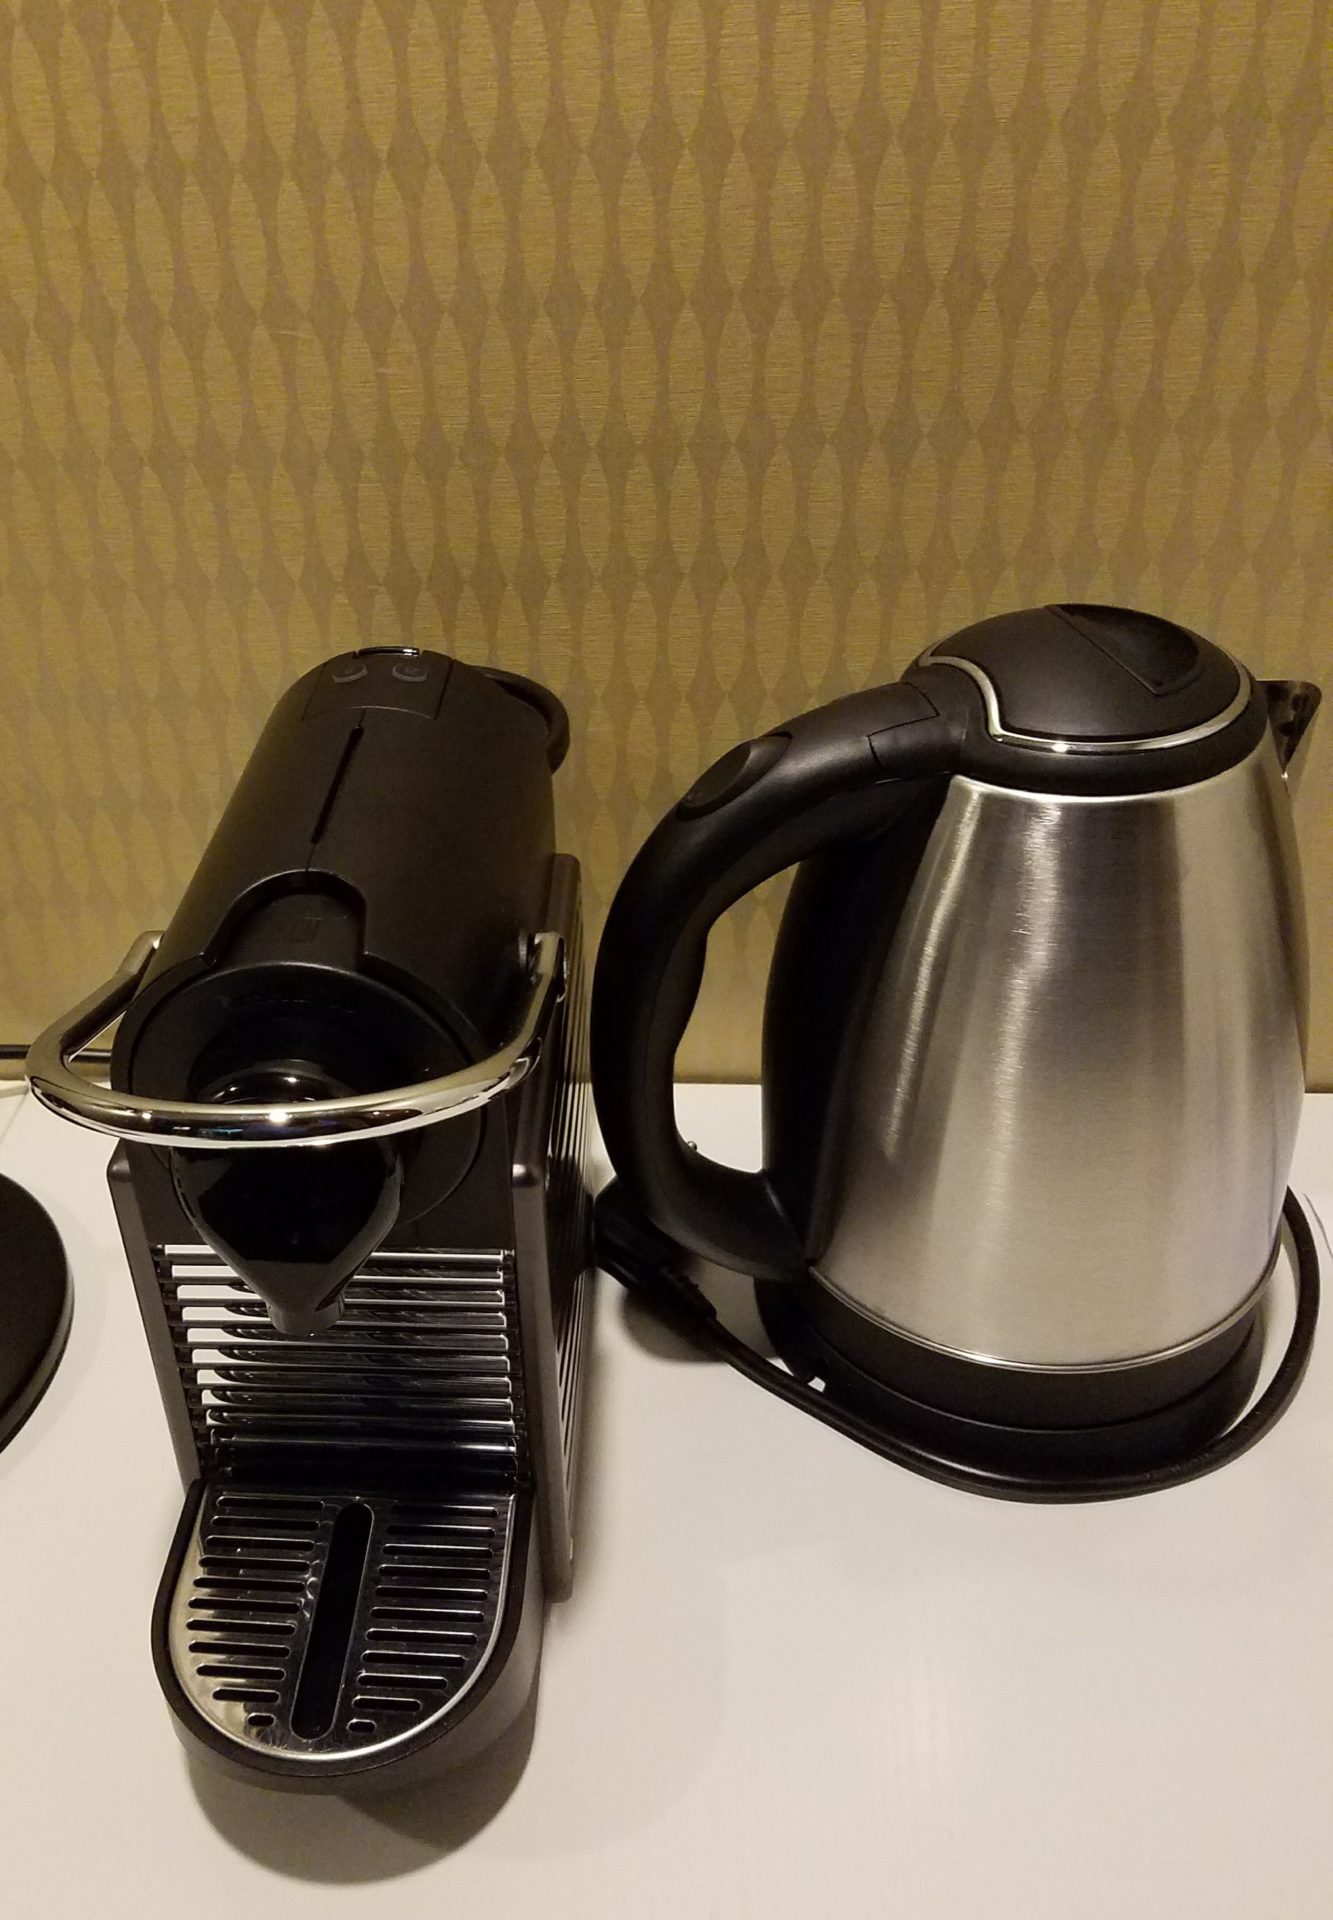 a coffee maker next to a coffee pot